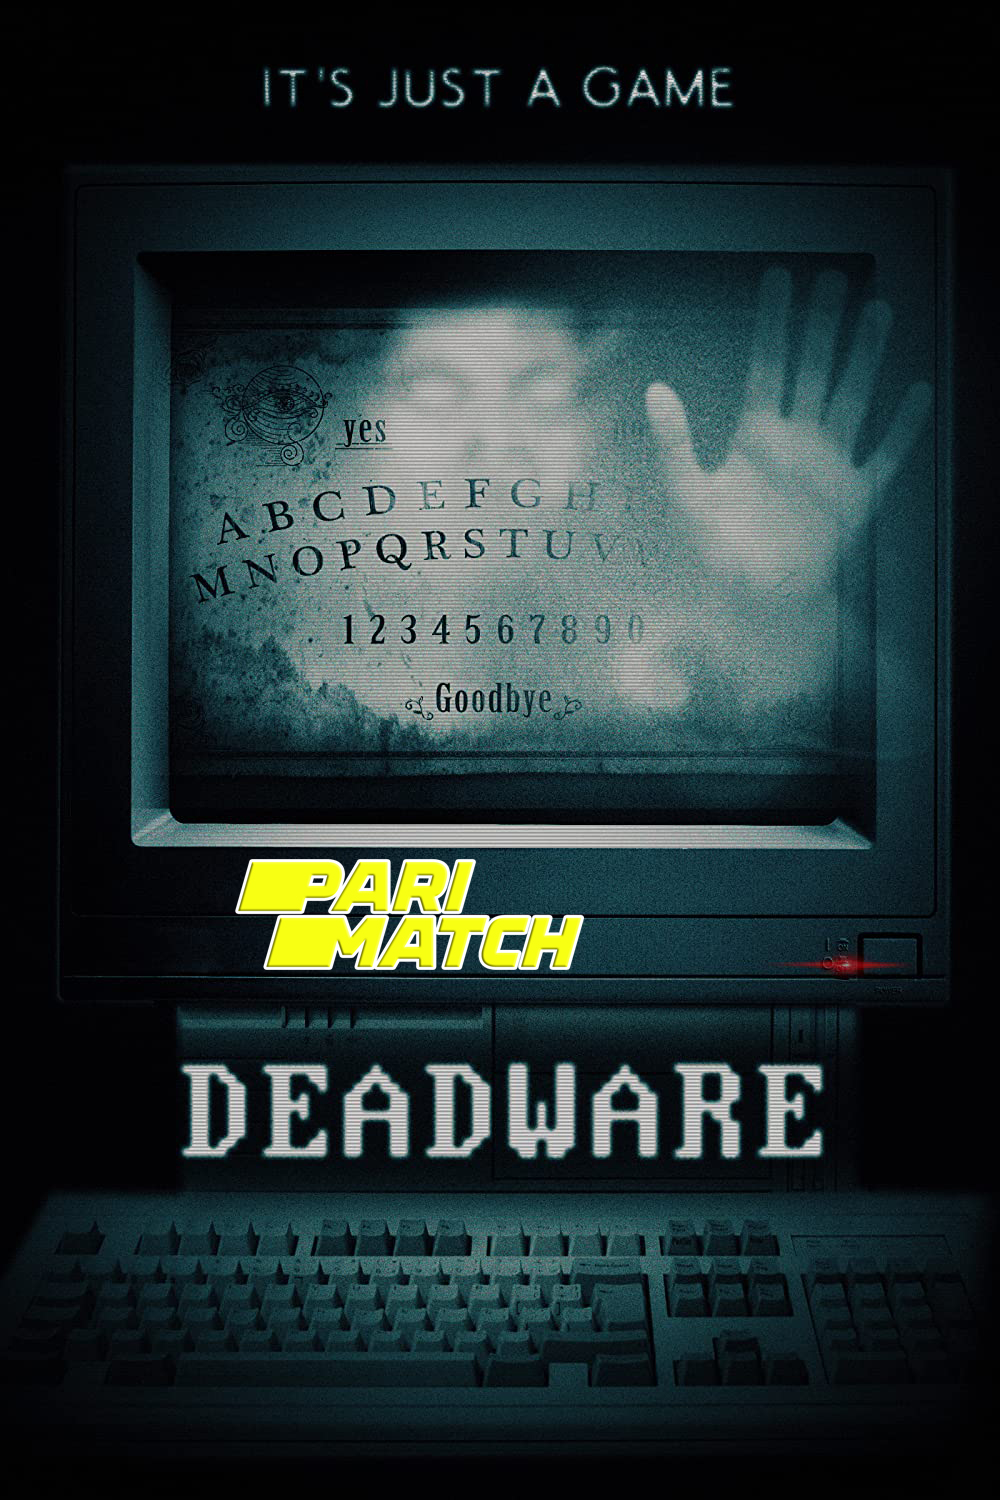 Deadware (2022) Bengali Dubbed (VO) [PariMatch] 720p WEBRip Download